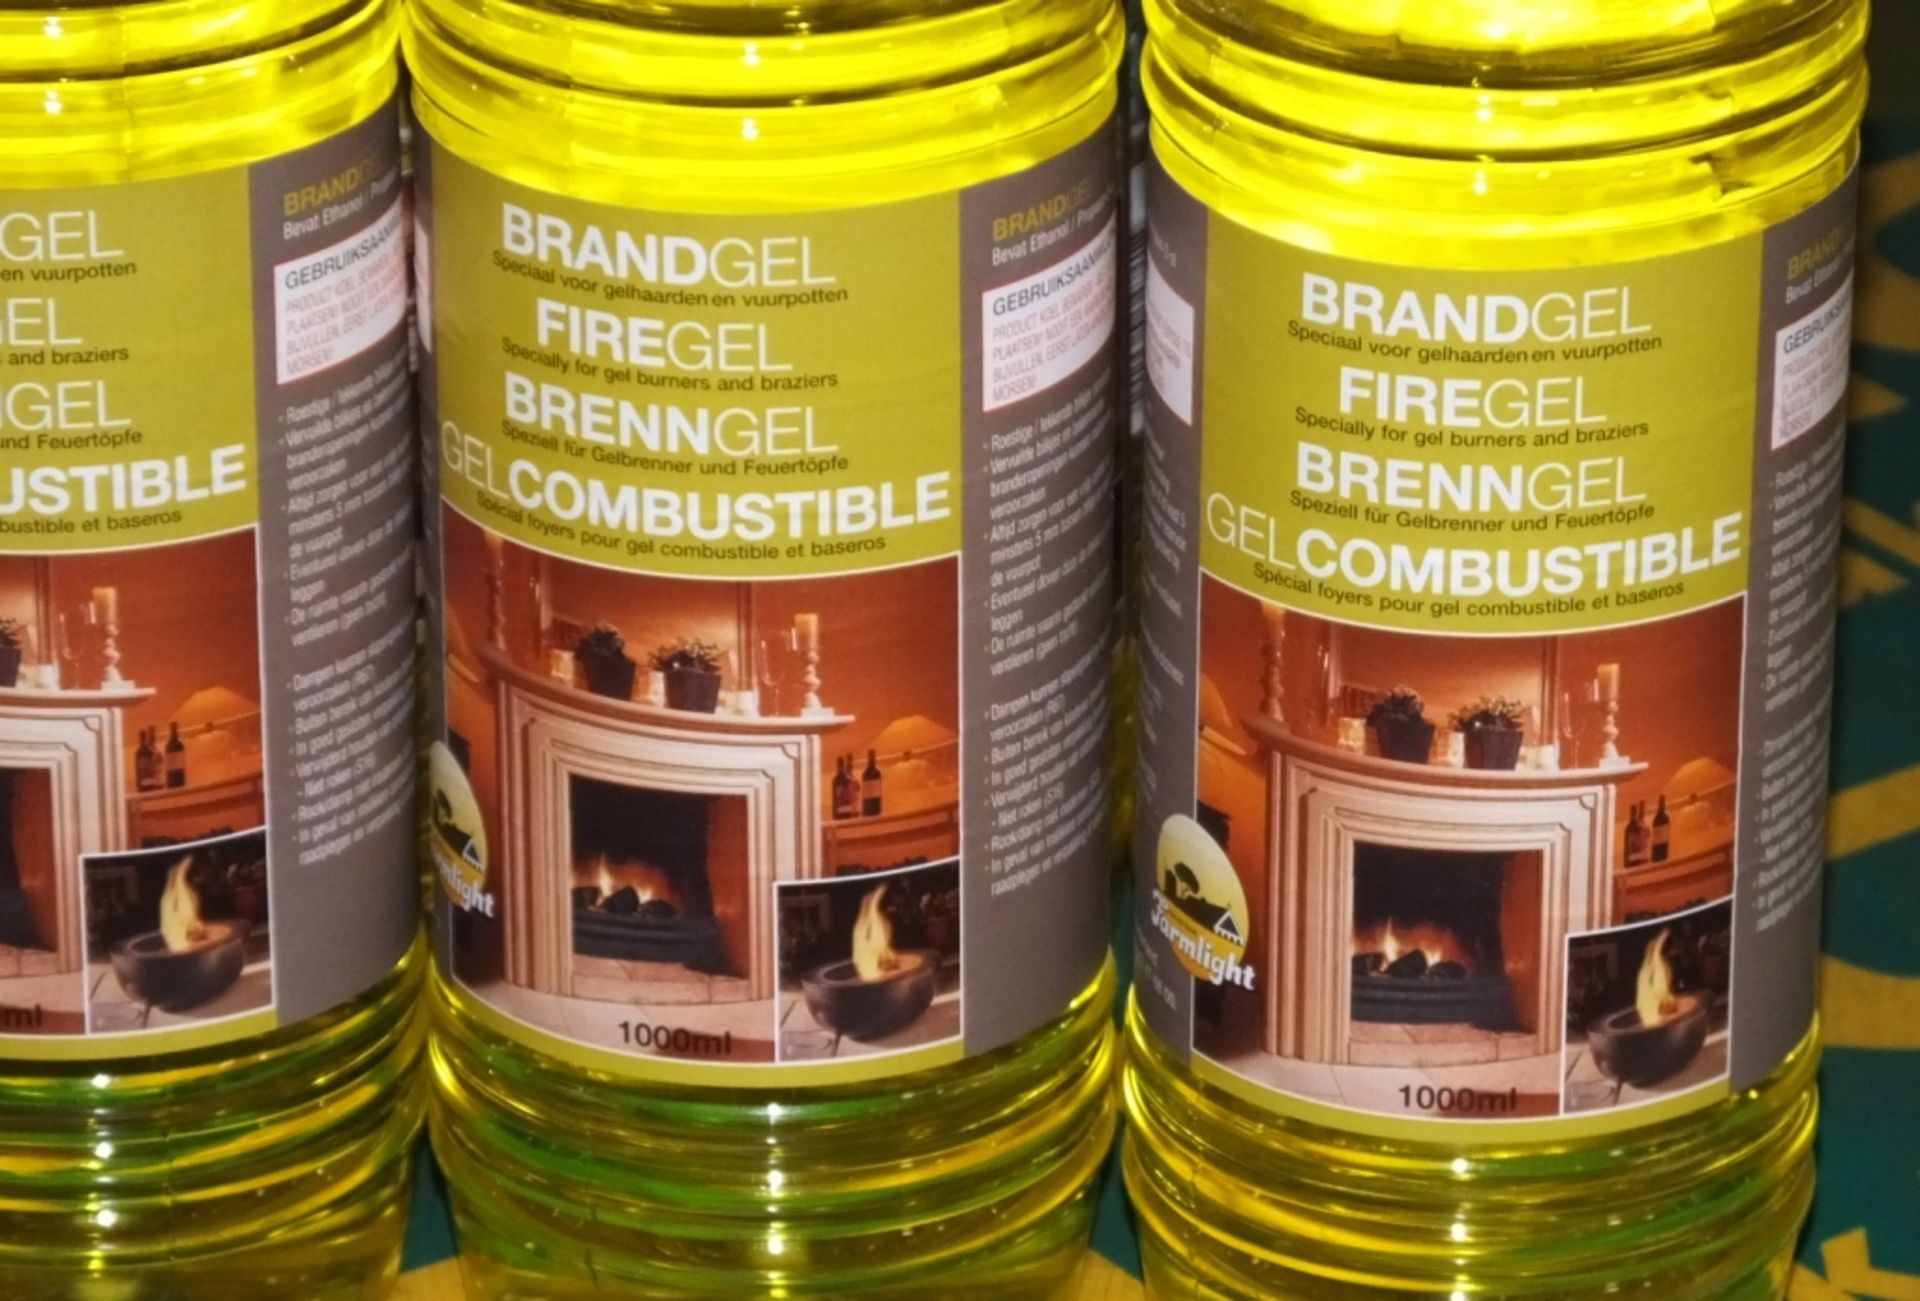 Farmlight Brandgel Firegel 1LTR - 12 Bottles COLLECTION ONLY - Image 2 of 2